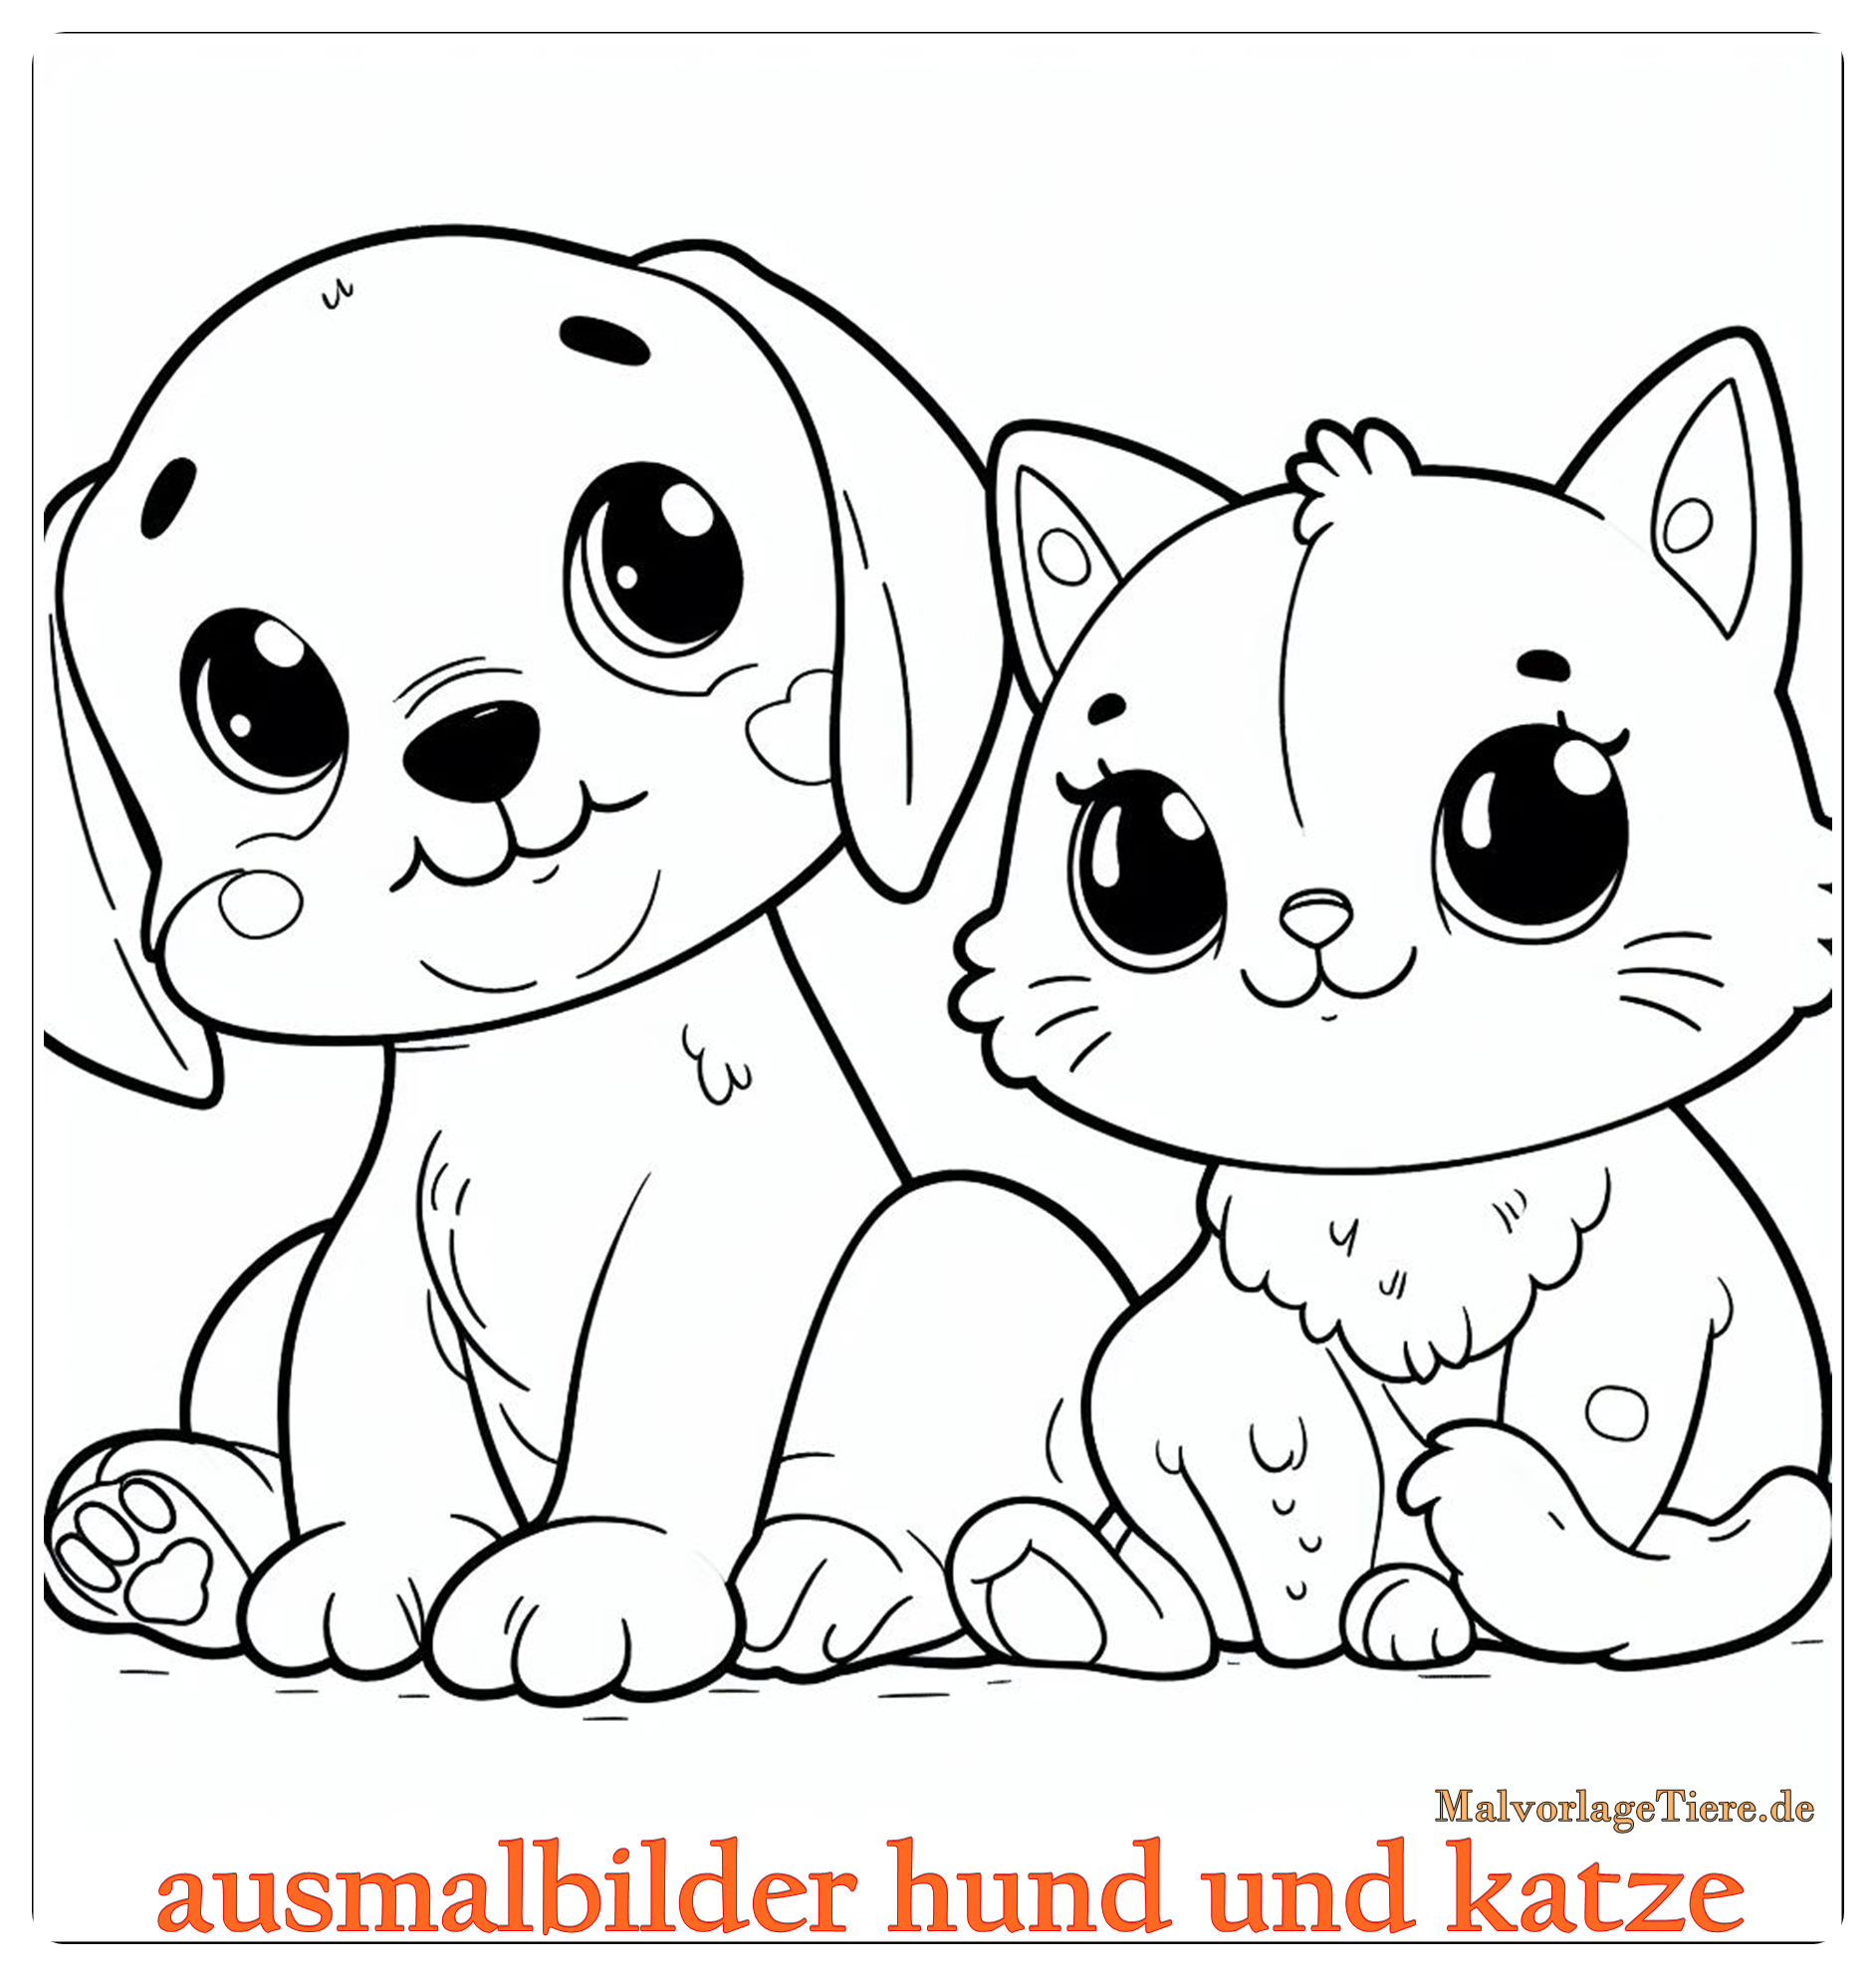 ausmalbilder hund und katze 02 by malvorlagetiere.de